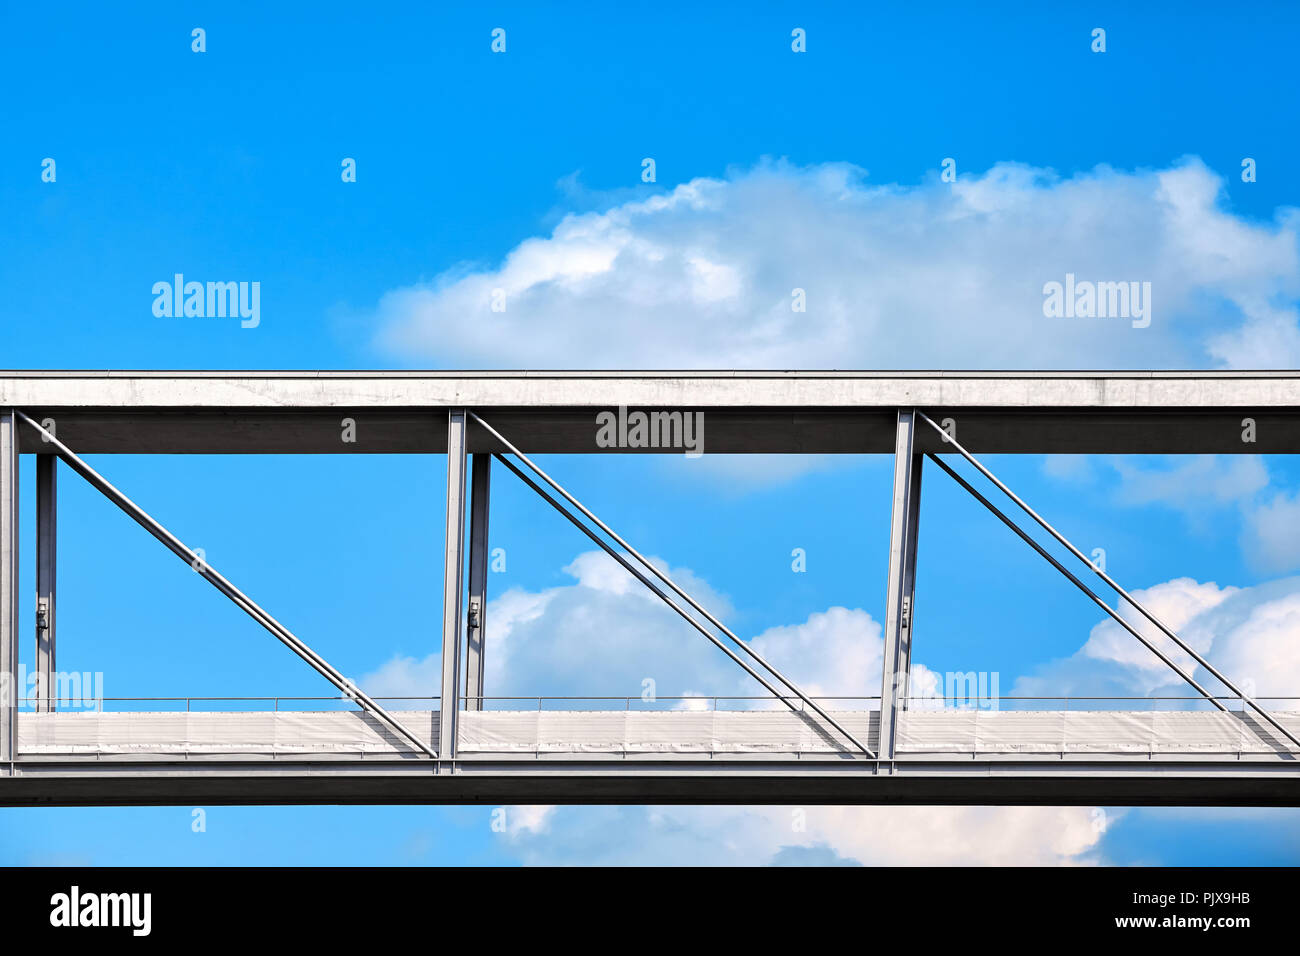 Bild einer Fußgängerbrücke gegen den Himmel. Stockfoto